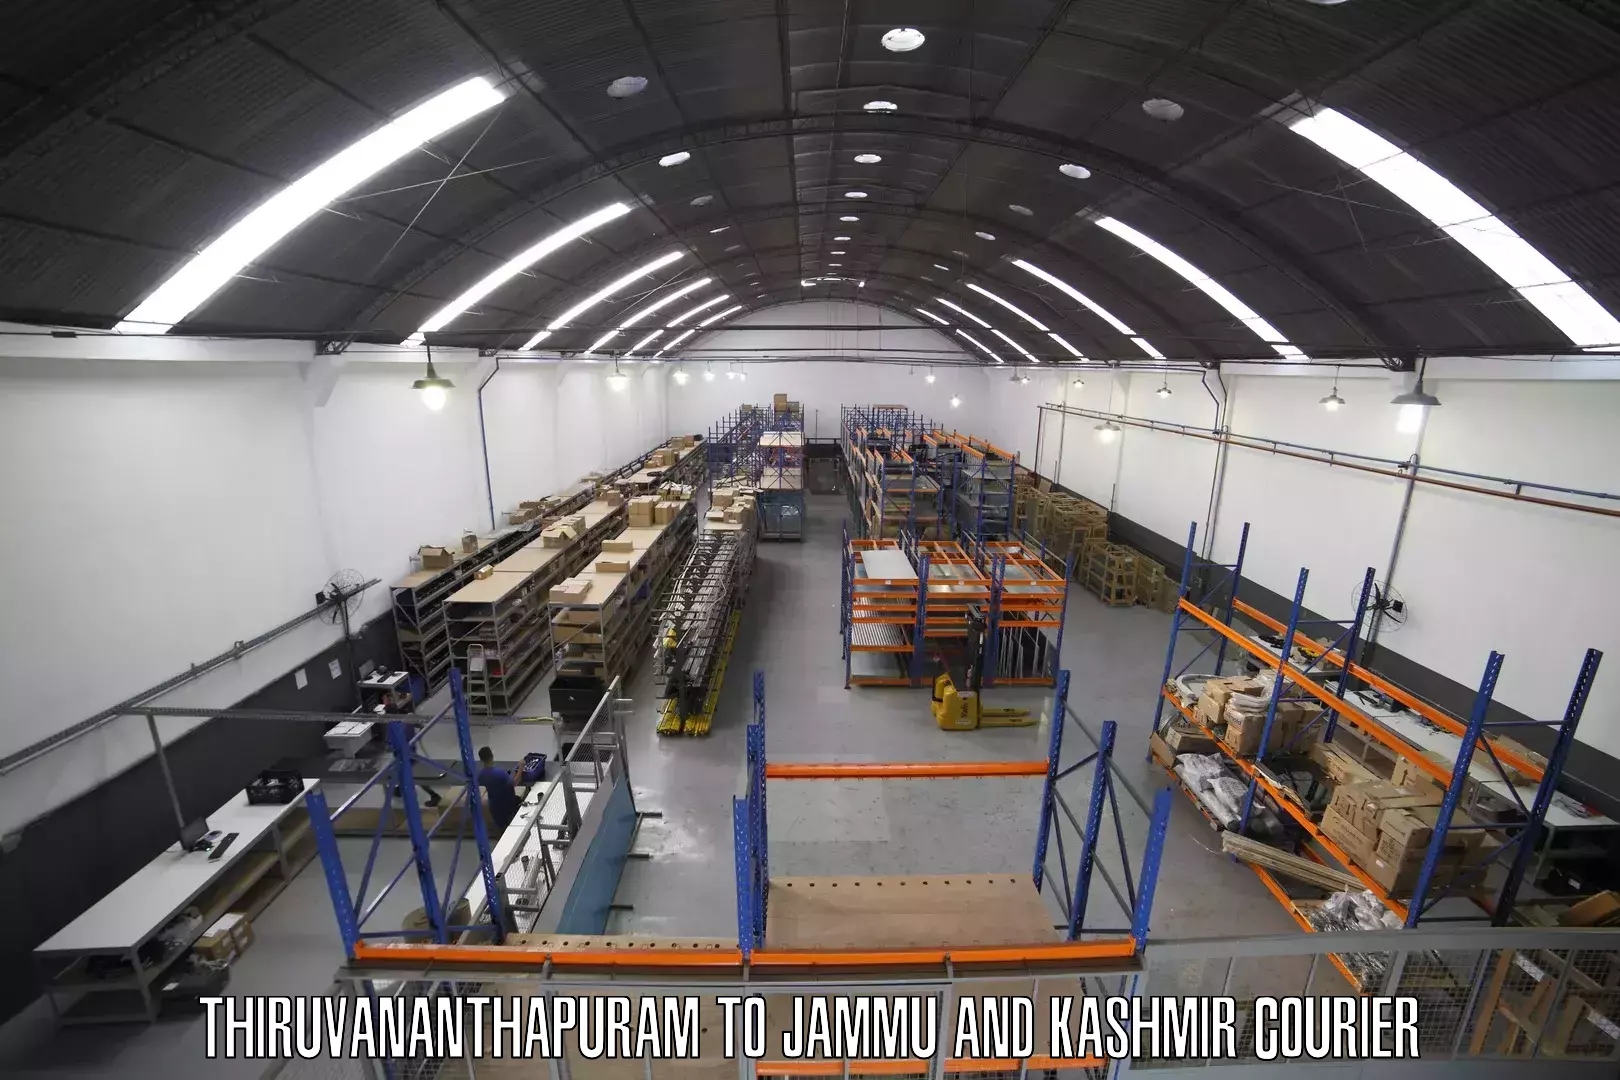 Digital shipping tools Thiruvananthapuram to Kargil